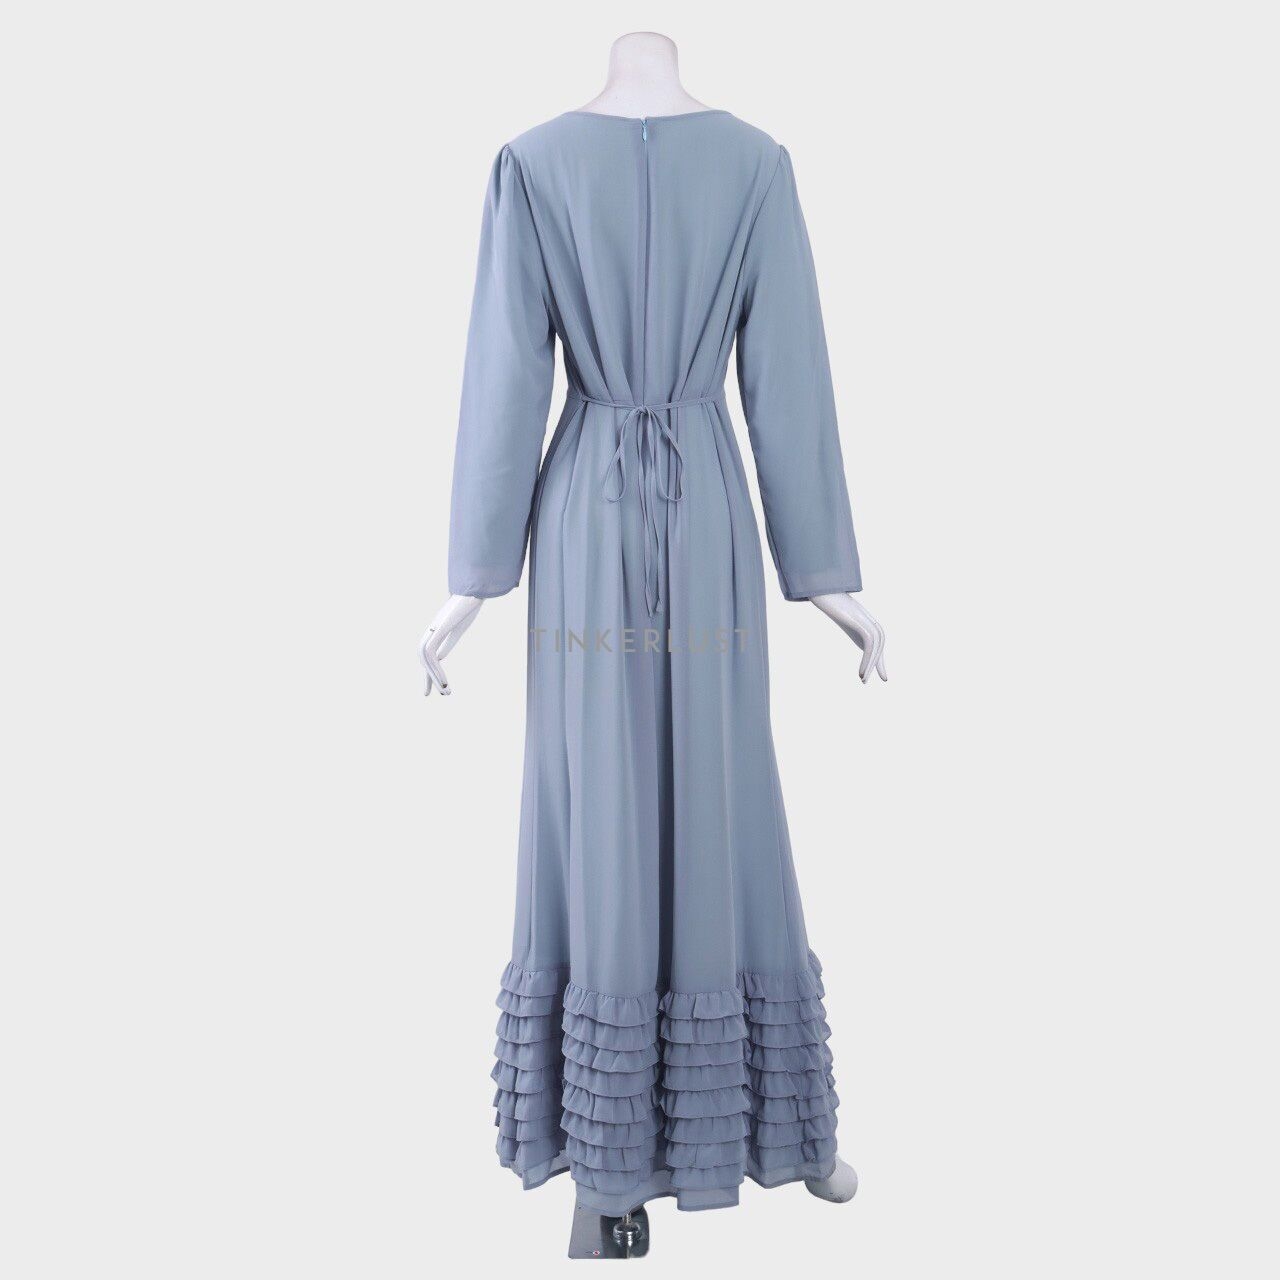 POPLOOK Blue Long Dress